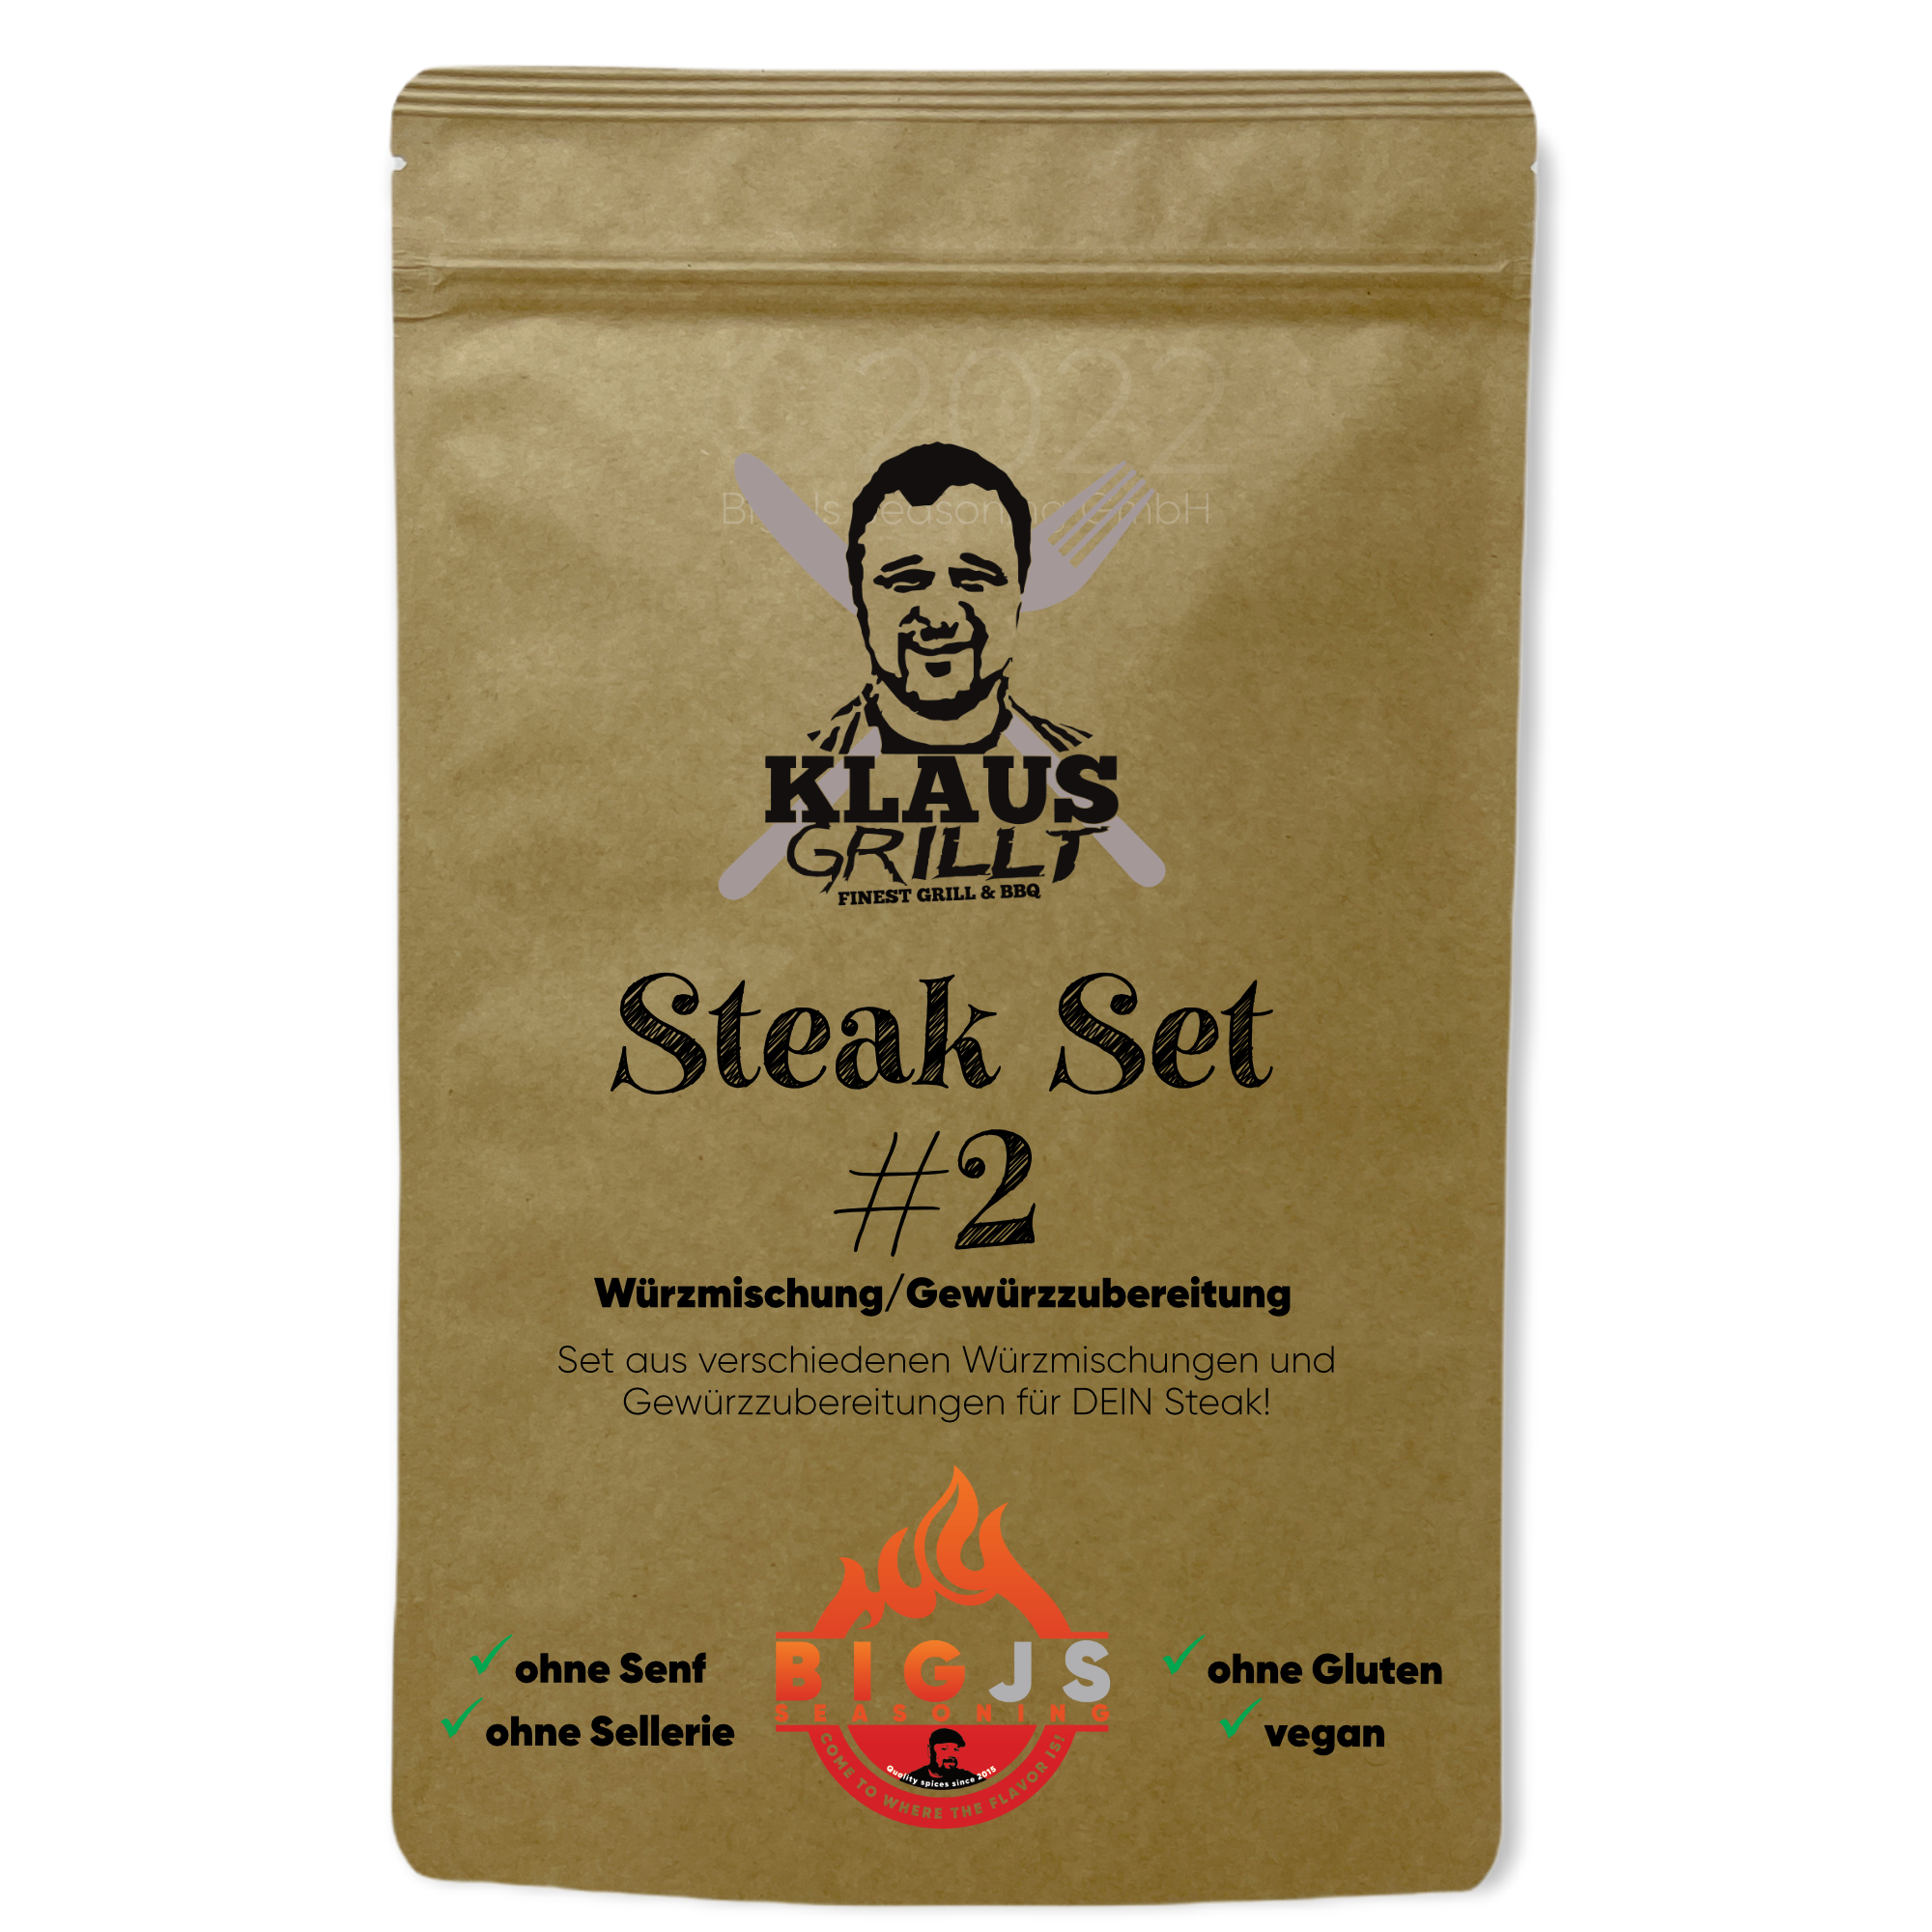 Klaus grillt Steak Set #2, 4x50g Beutel